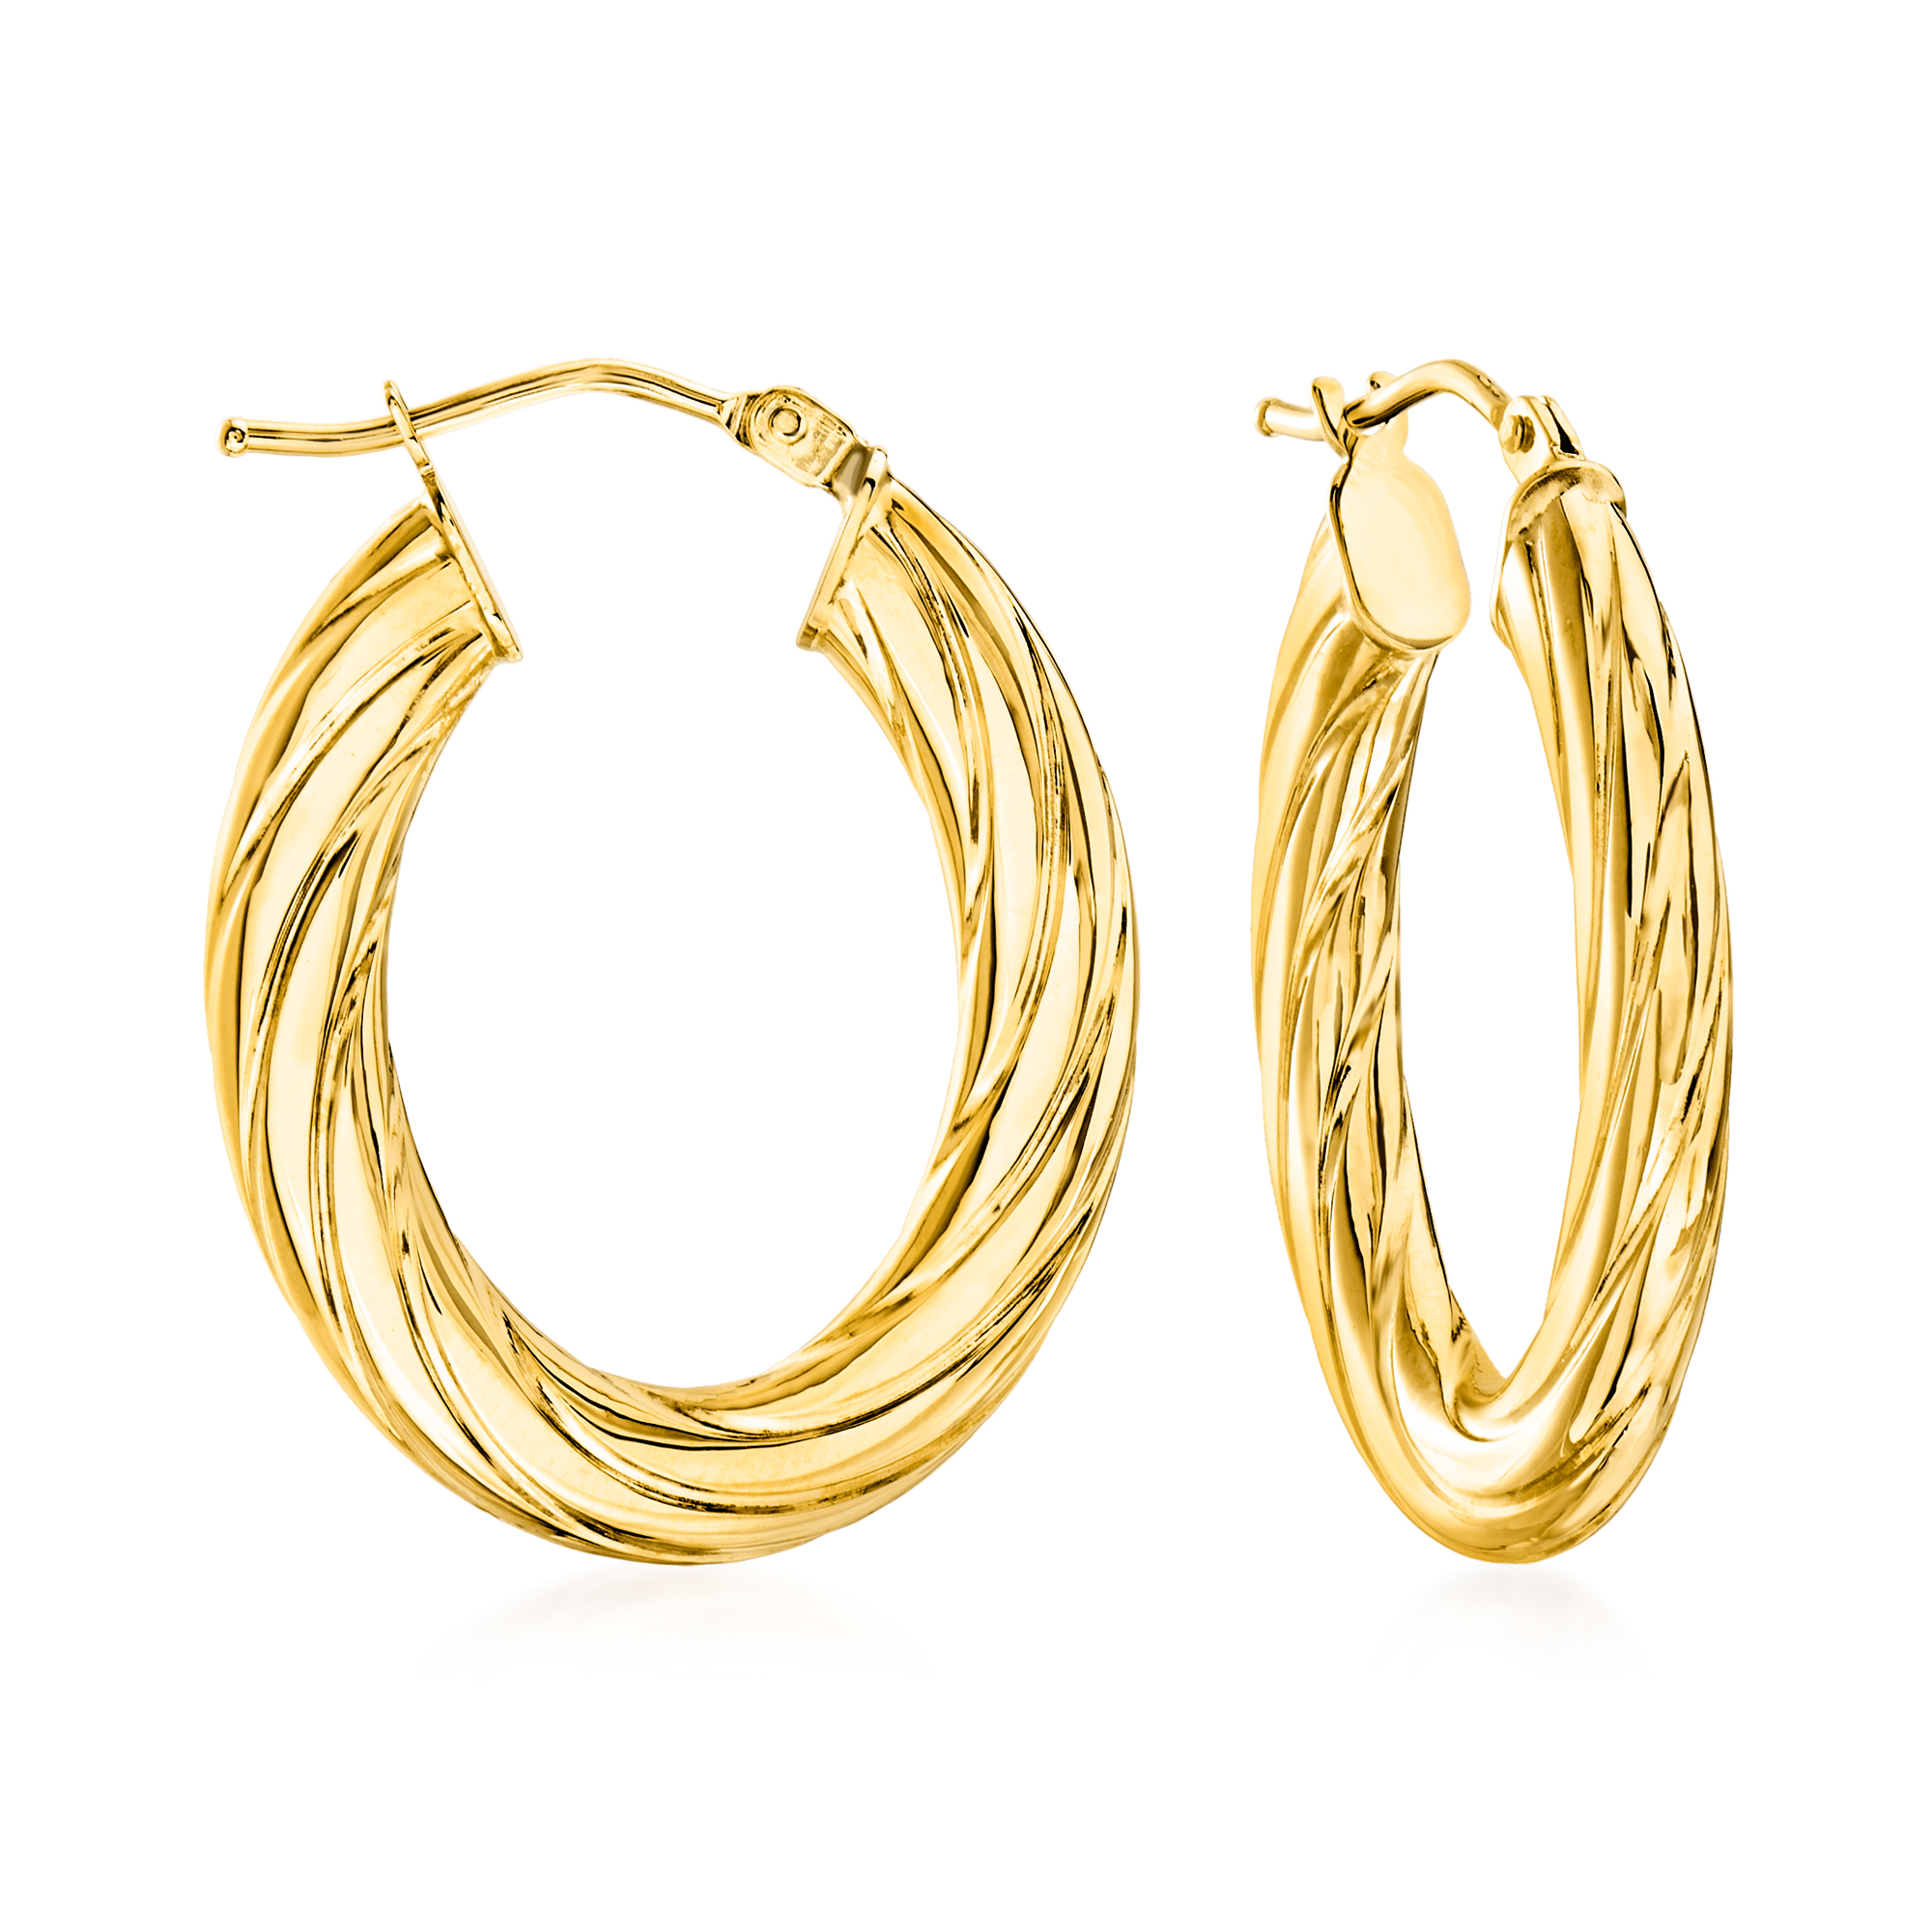 Italian 14kt Yellow Gold Oval Hoop Earrings. 1